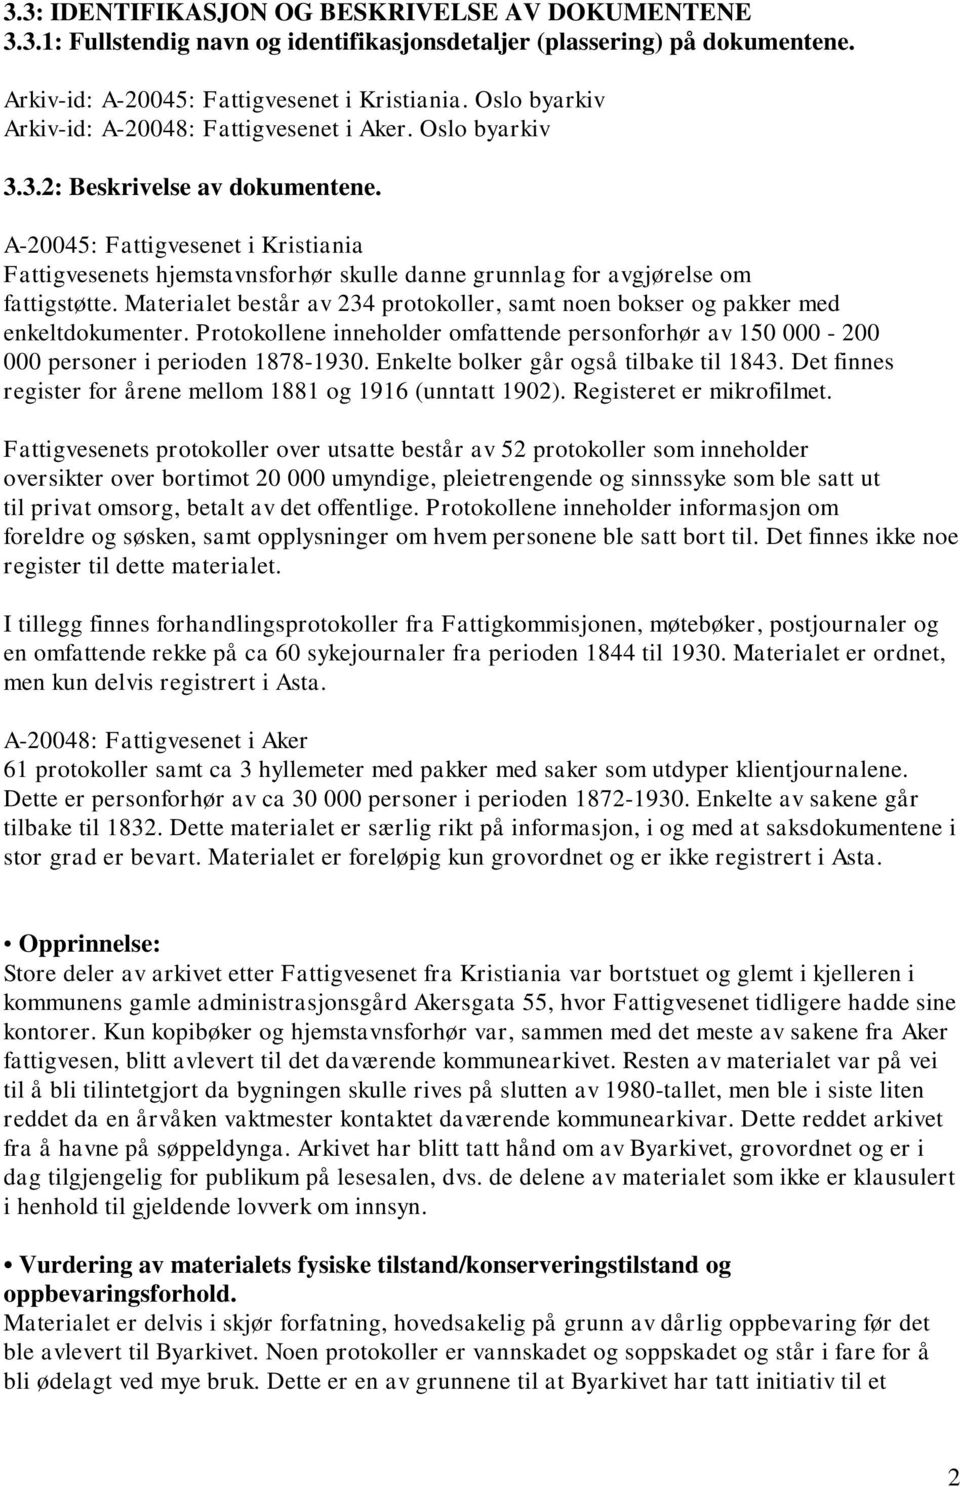 A-20045: Fattigvesenet i Kristiania Fattigvesenets hjemstavnsforhør skulle danne grunnlag for avgjørelse om fattigstøtte.